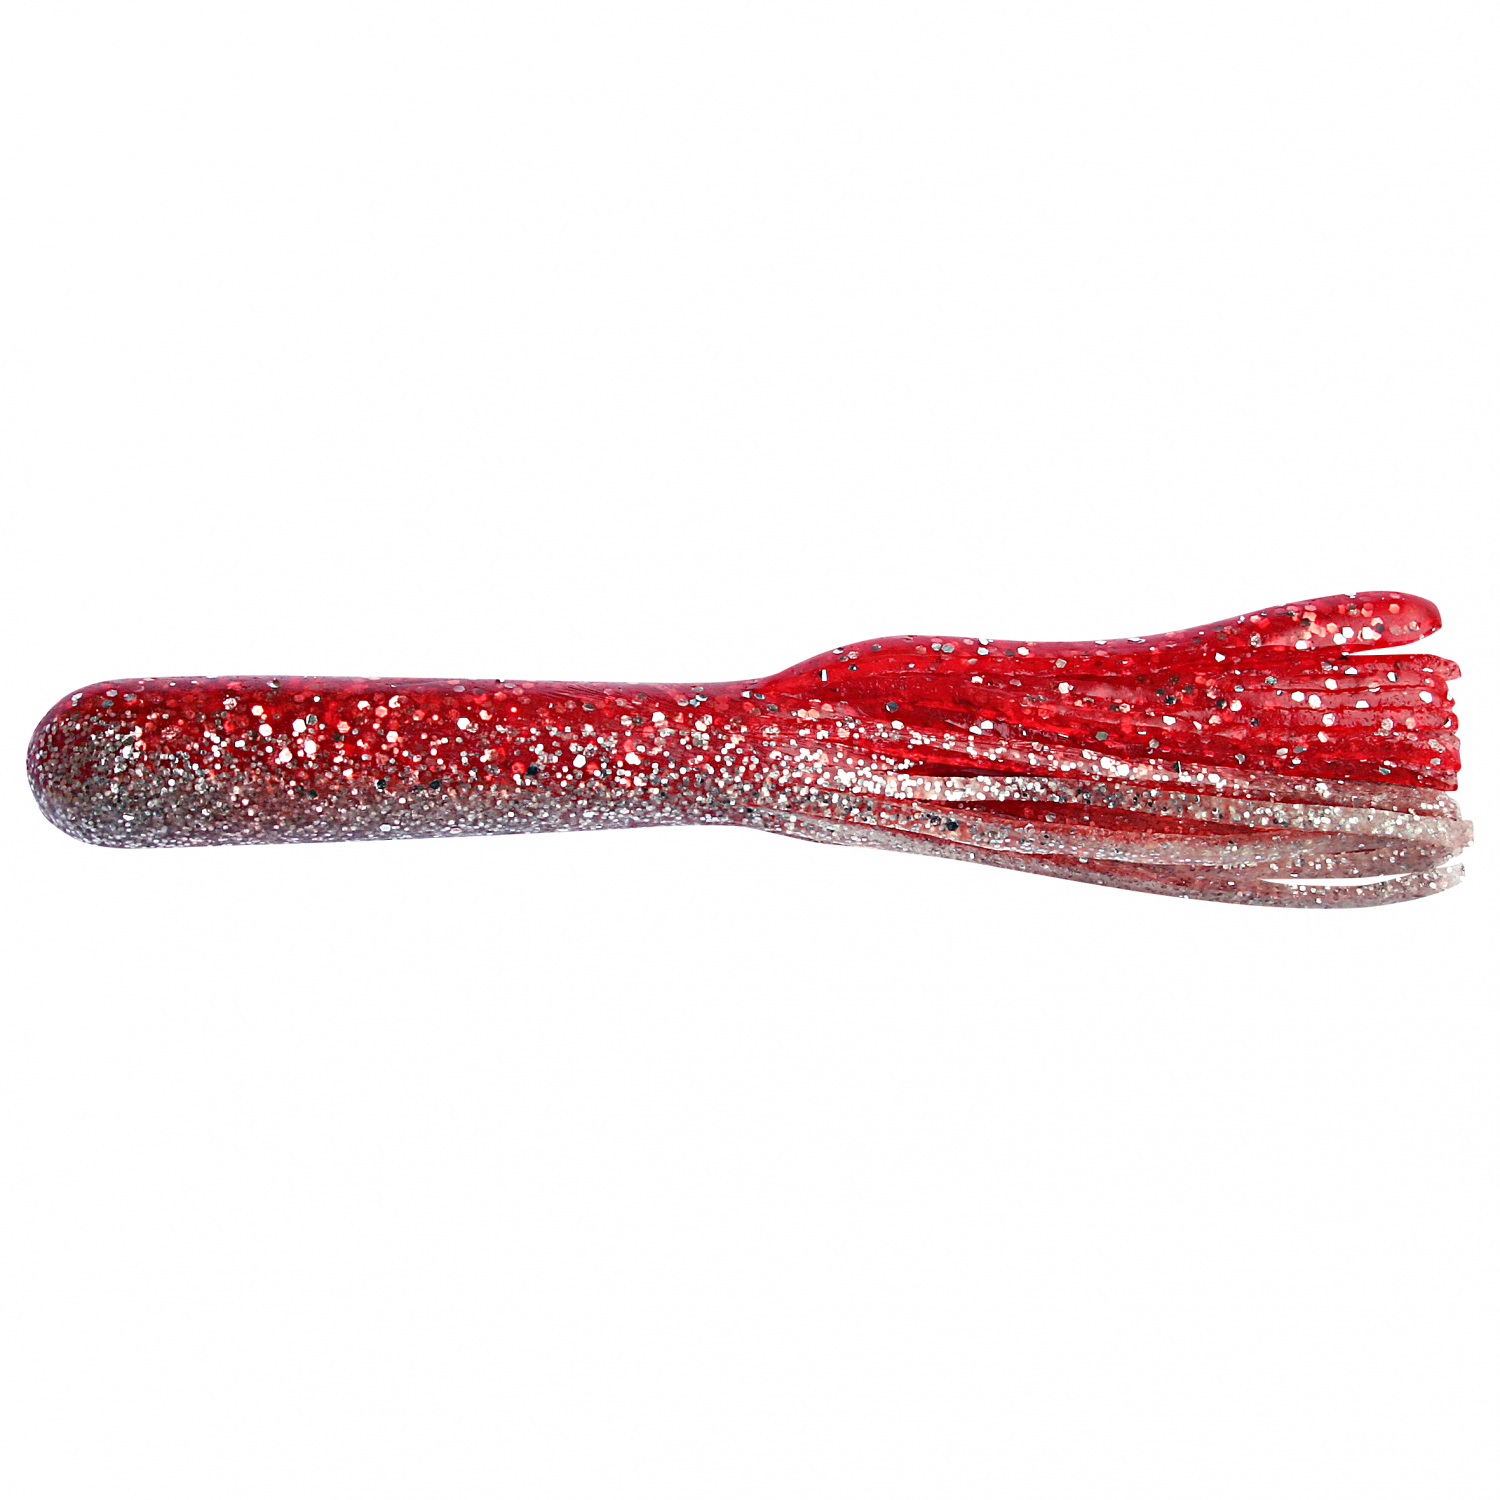 ShadXperts Fransenköder Magnum Tube 5" (Kristall-Glitter/Rot-Glitter) 